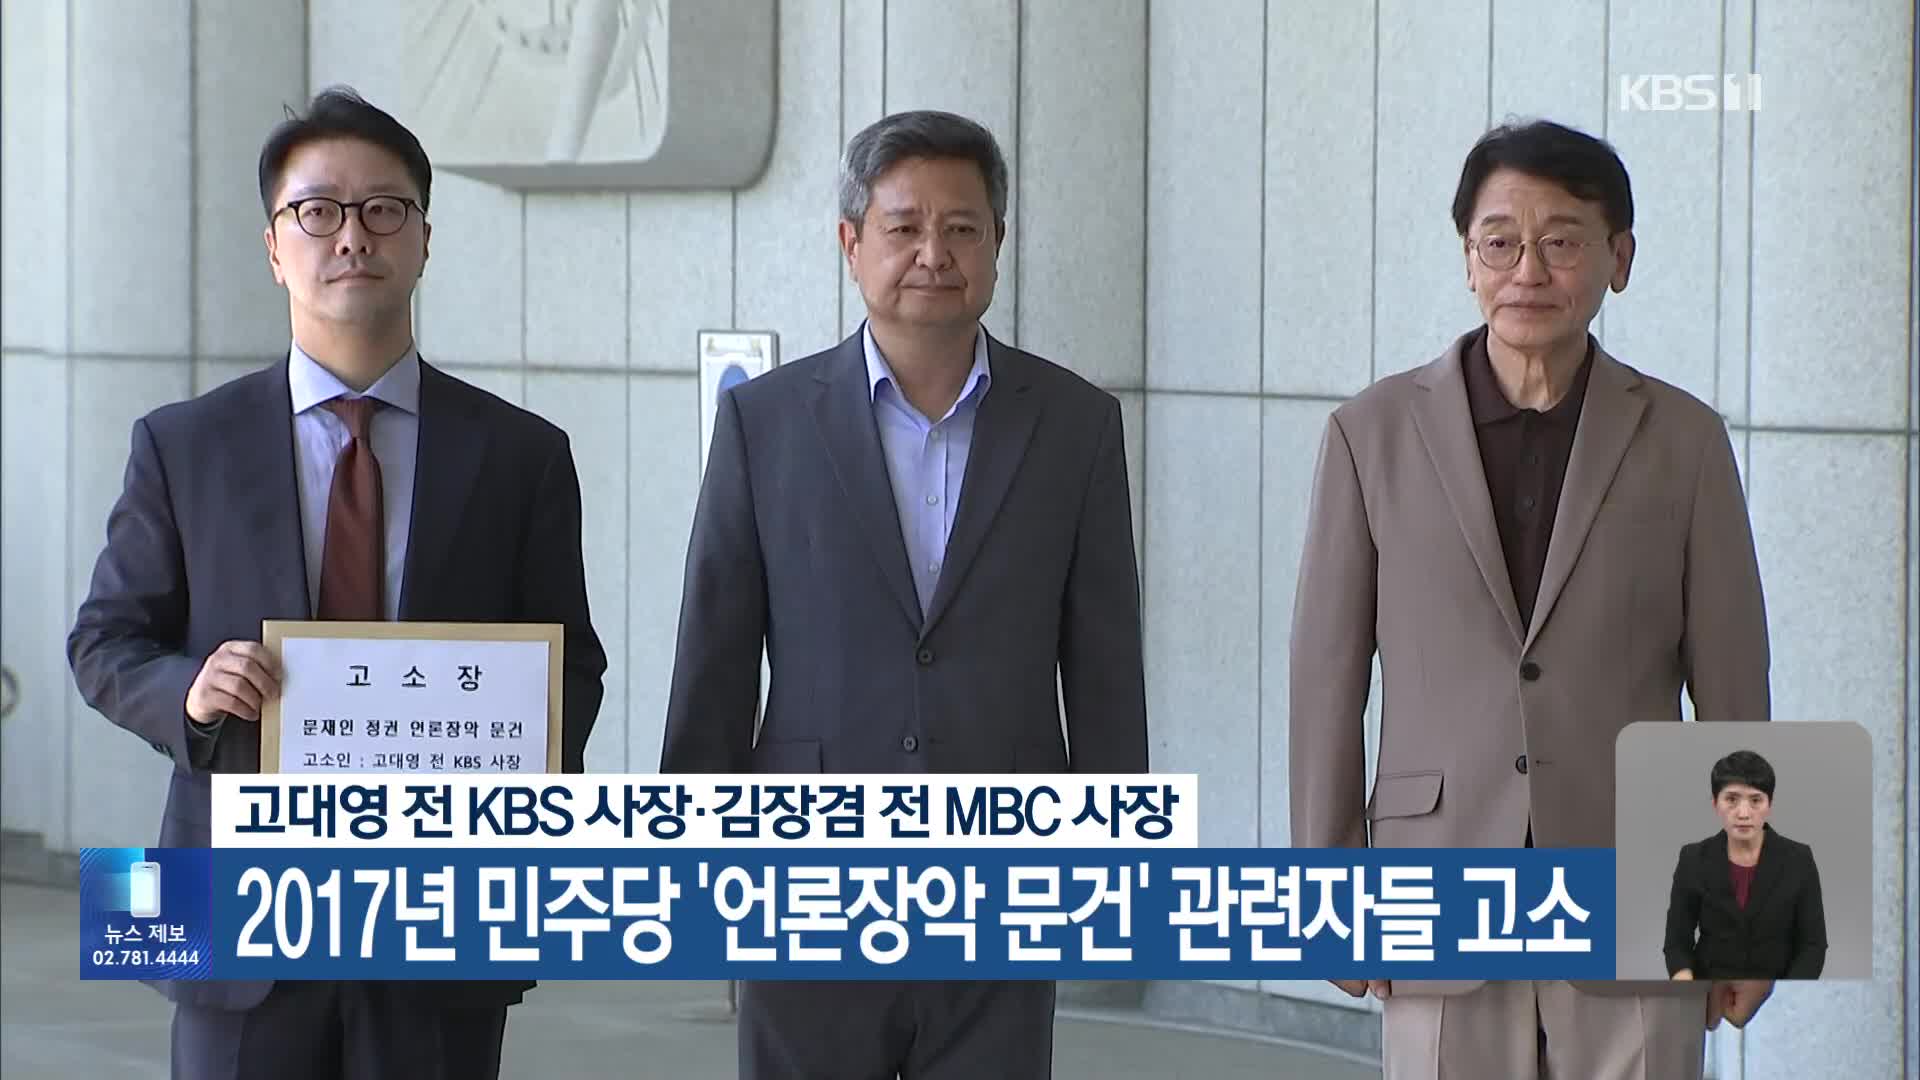 고대영 전 KBS 사장·김장겸 전 MBC 사장, 2017년 민주당 ‘언론장악 문건’ 관련자들 고소